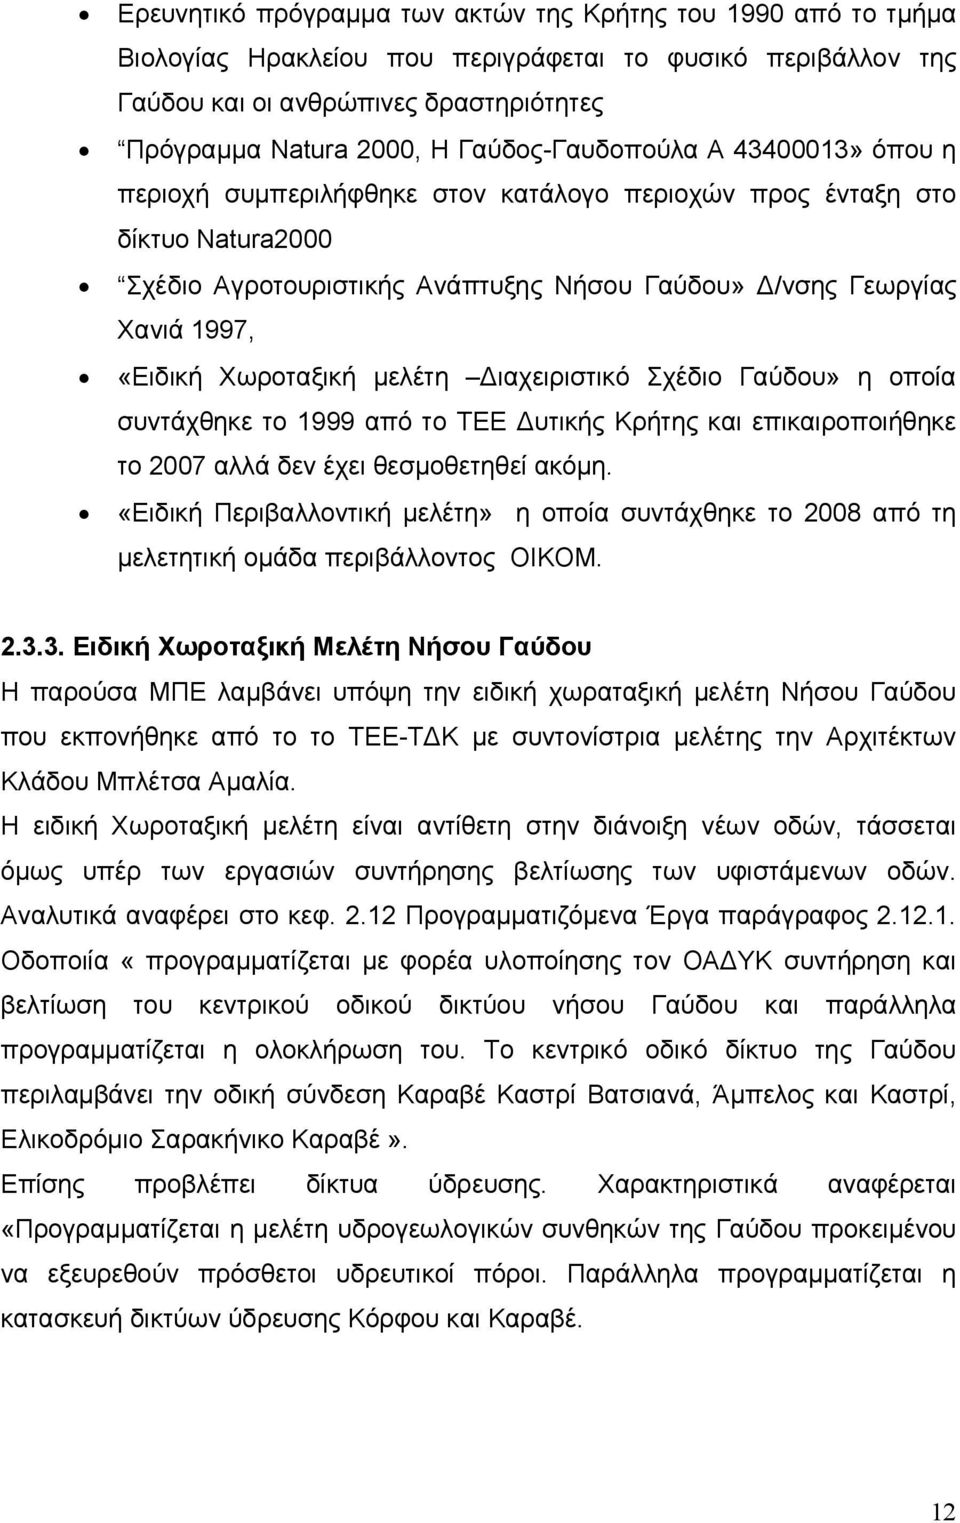 Χωροταξική μελέτη Διαχειριστικό Σχέδιο Γαύδου» η οποία συντάχθηκε το 1999 από το ΤΕΕ Δυτικής Κρήτης και επικαιροποιήθηκε το 2007 αλλά δεν έχει θεσμοθετηθεί ακόμη.